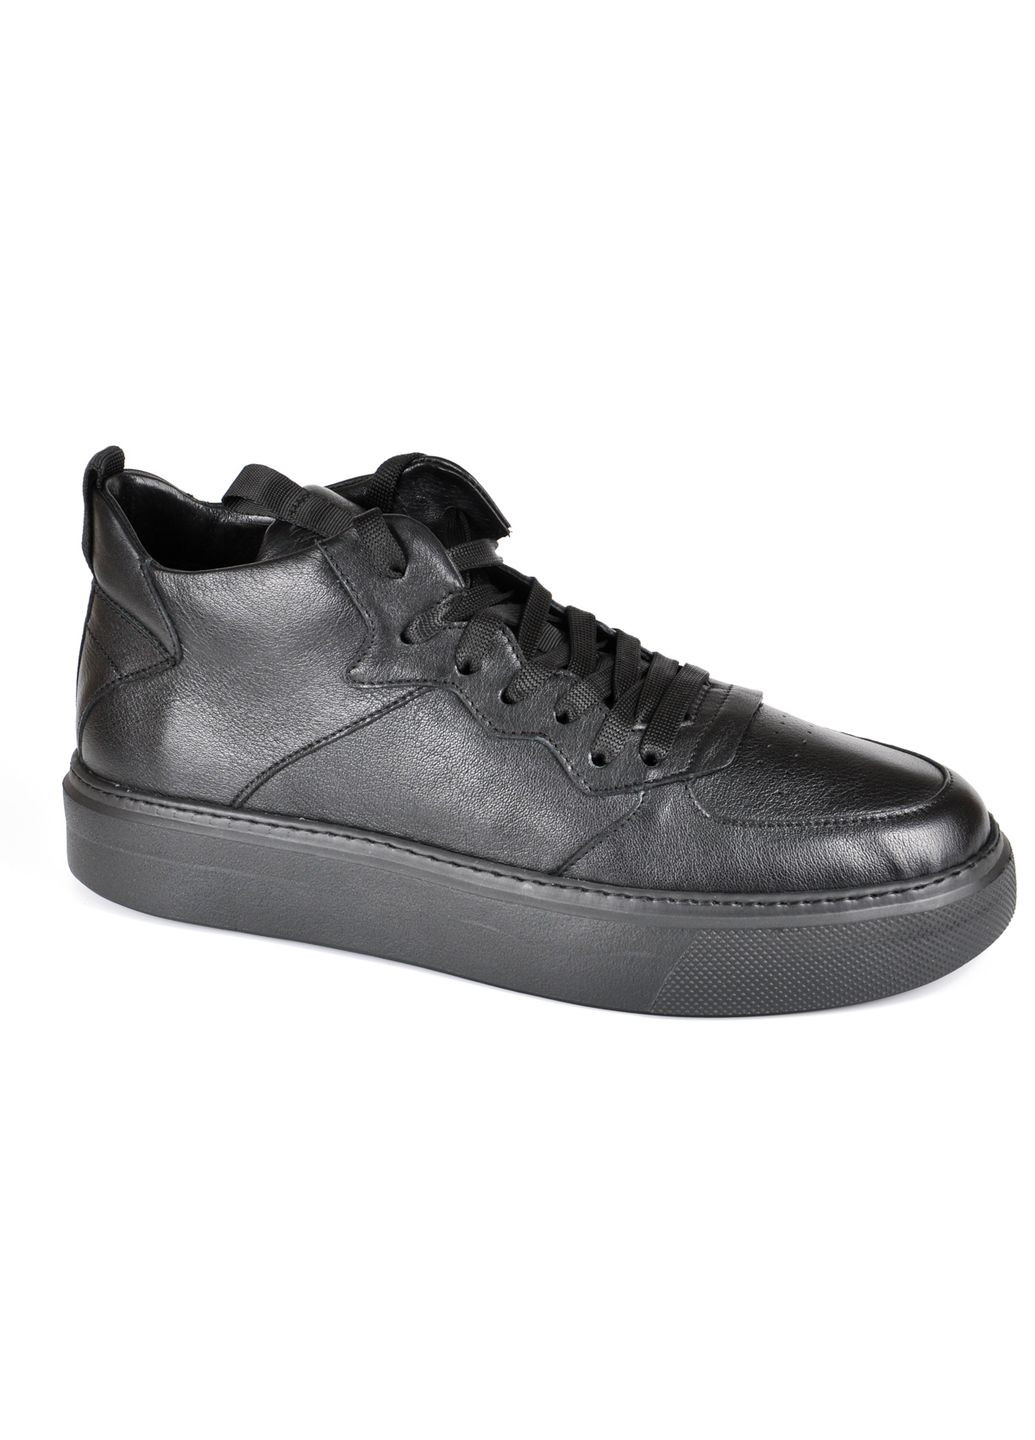 Черные ботинки комфорт 32-04088-б 40 Goodboots